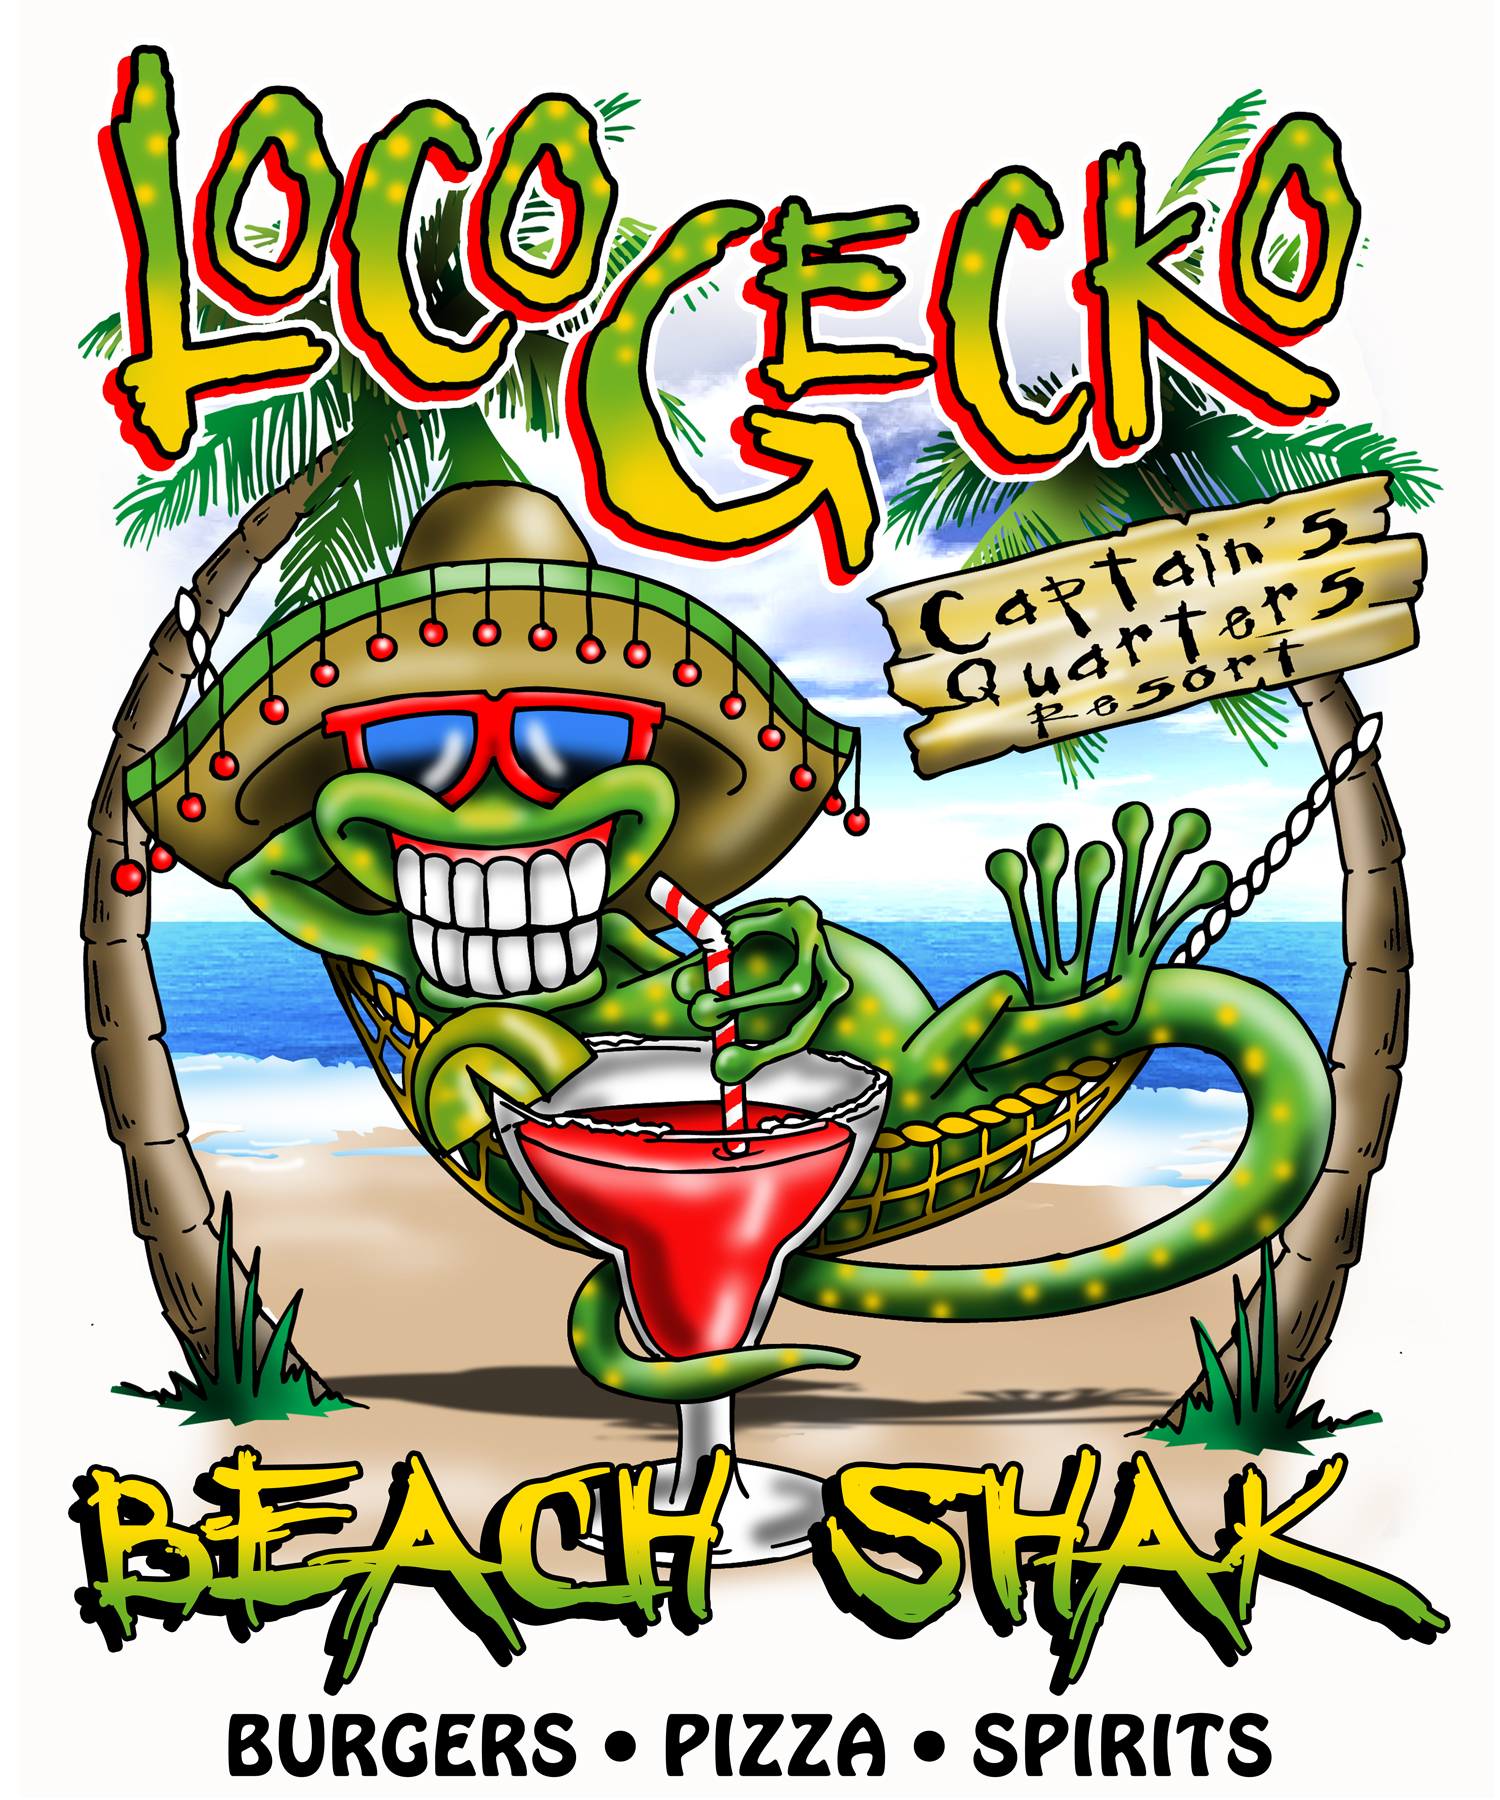 Loco Gecko - Captains Quarters Location